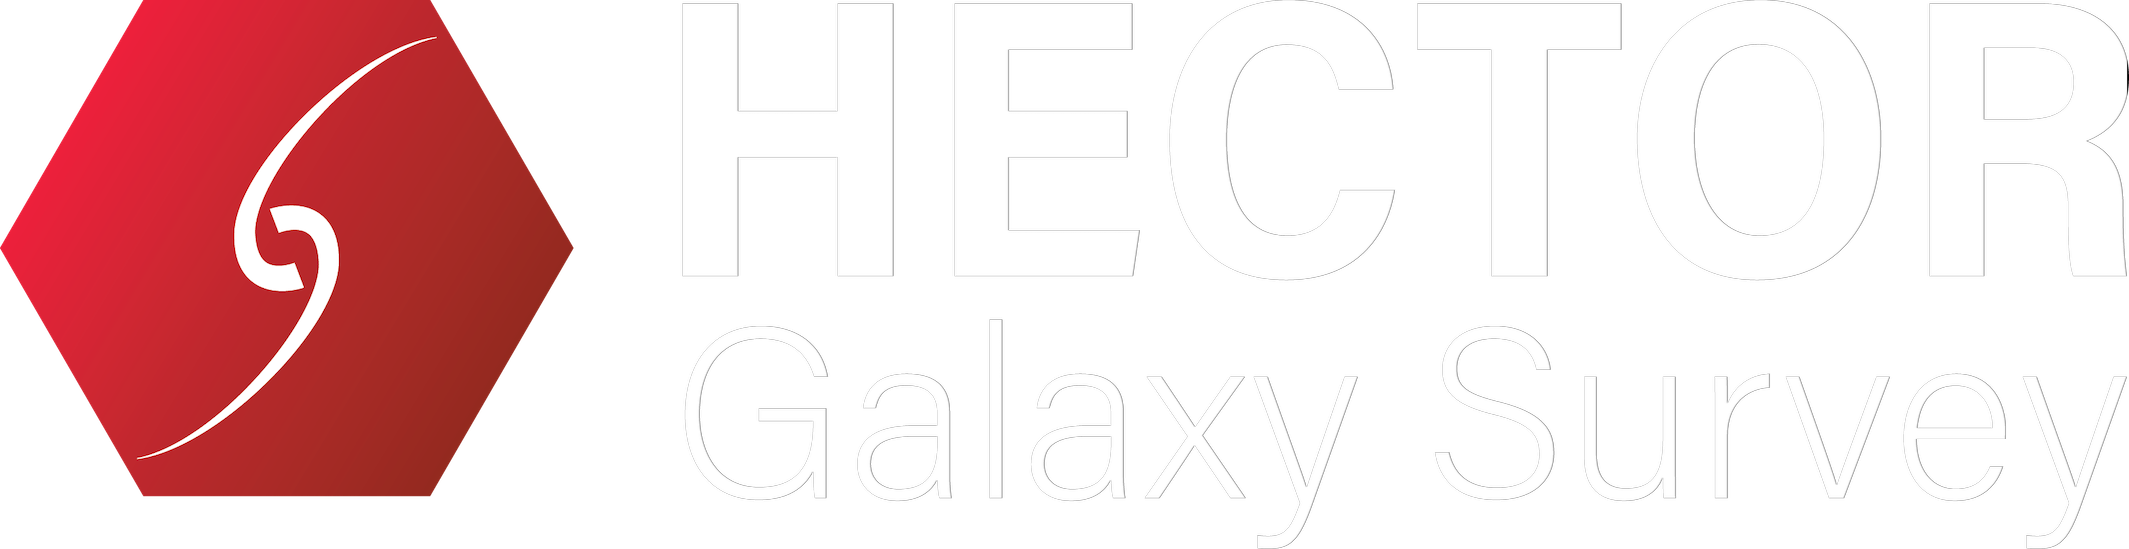 The Hector Galaxy Survey